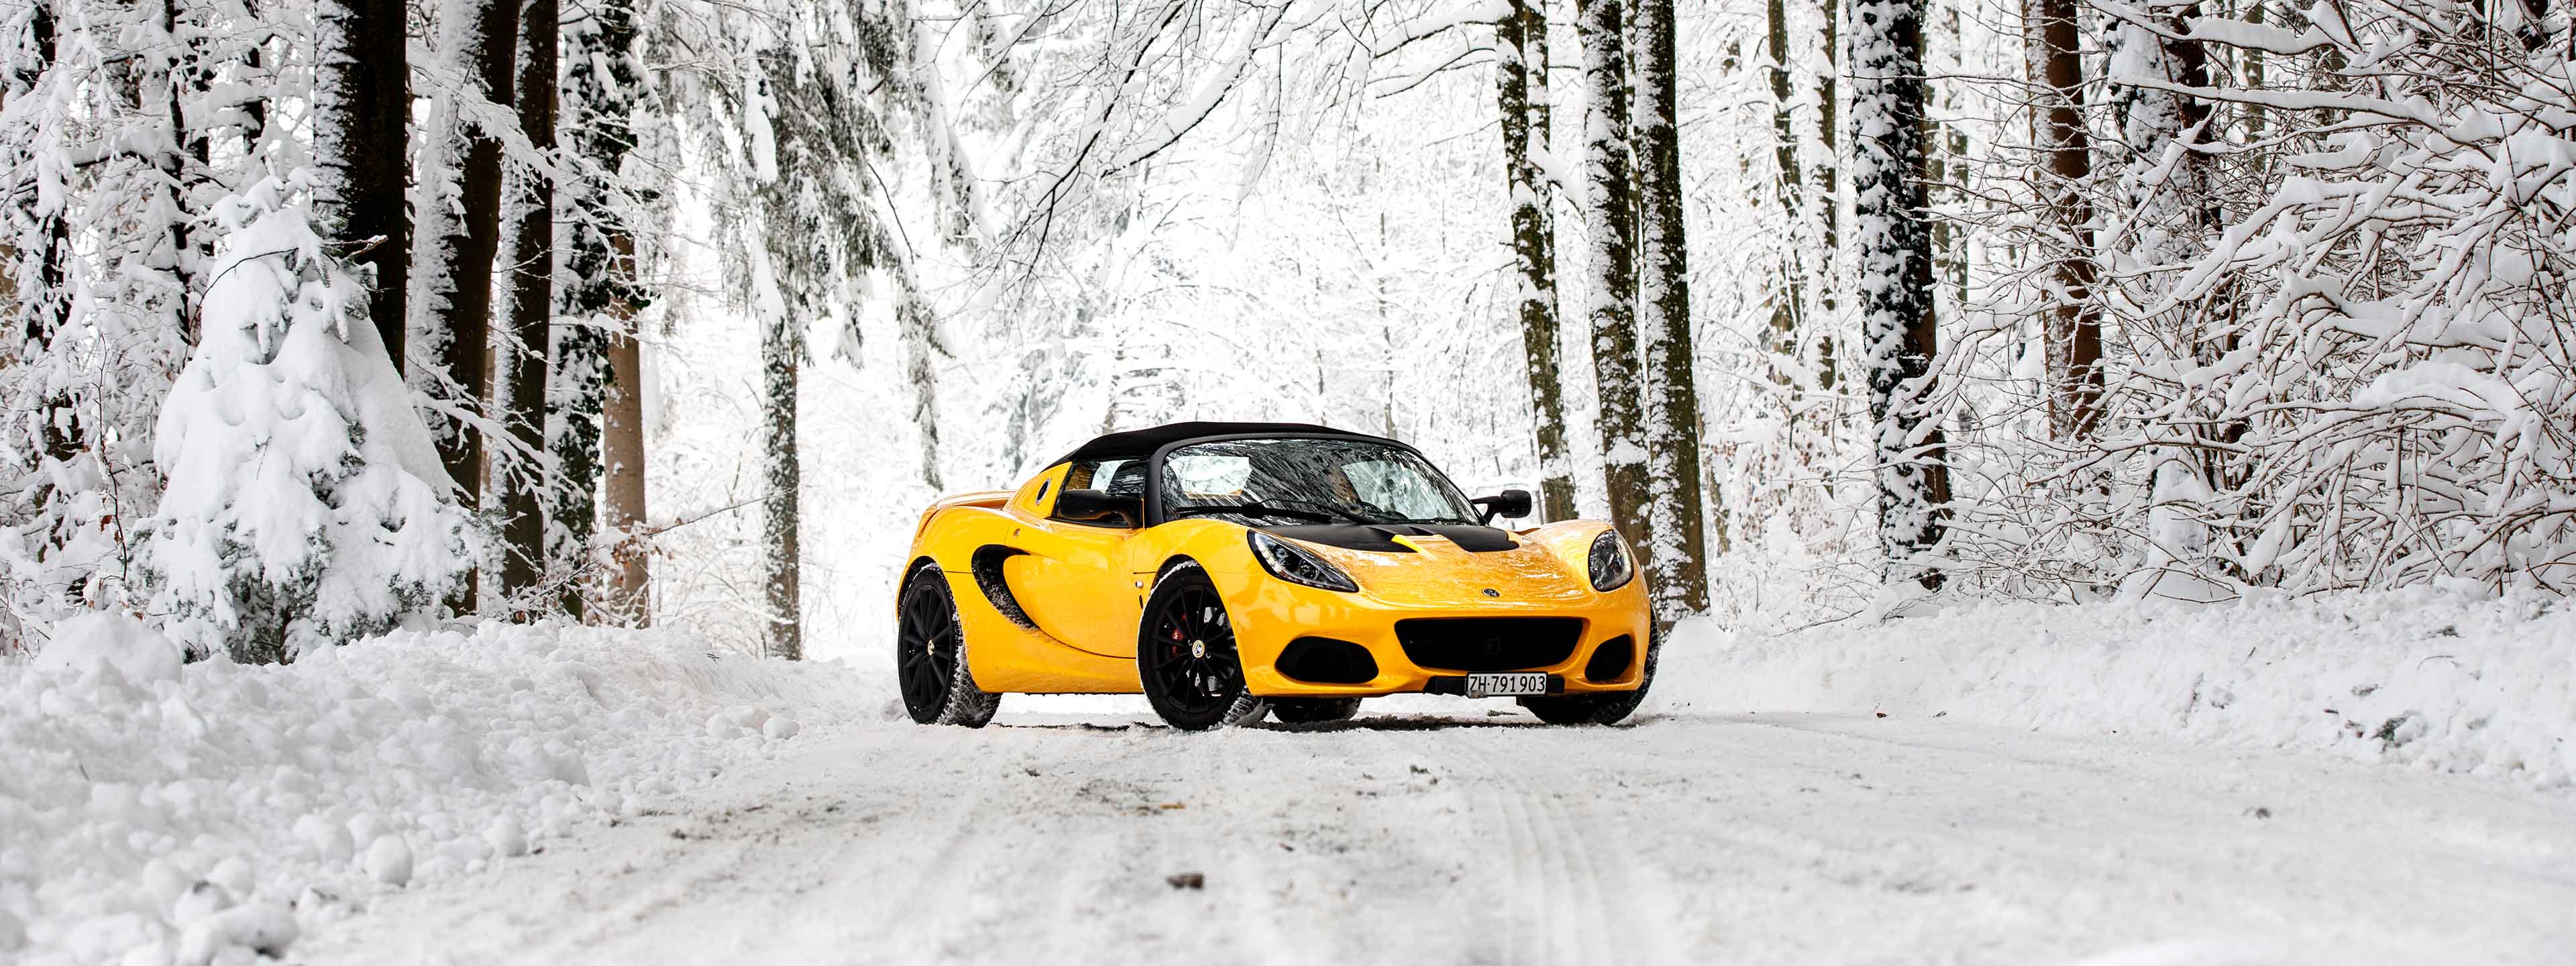 Lotus Elise Series 3 Winter Snow Schnee, Foto: Rob Spoel